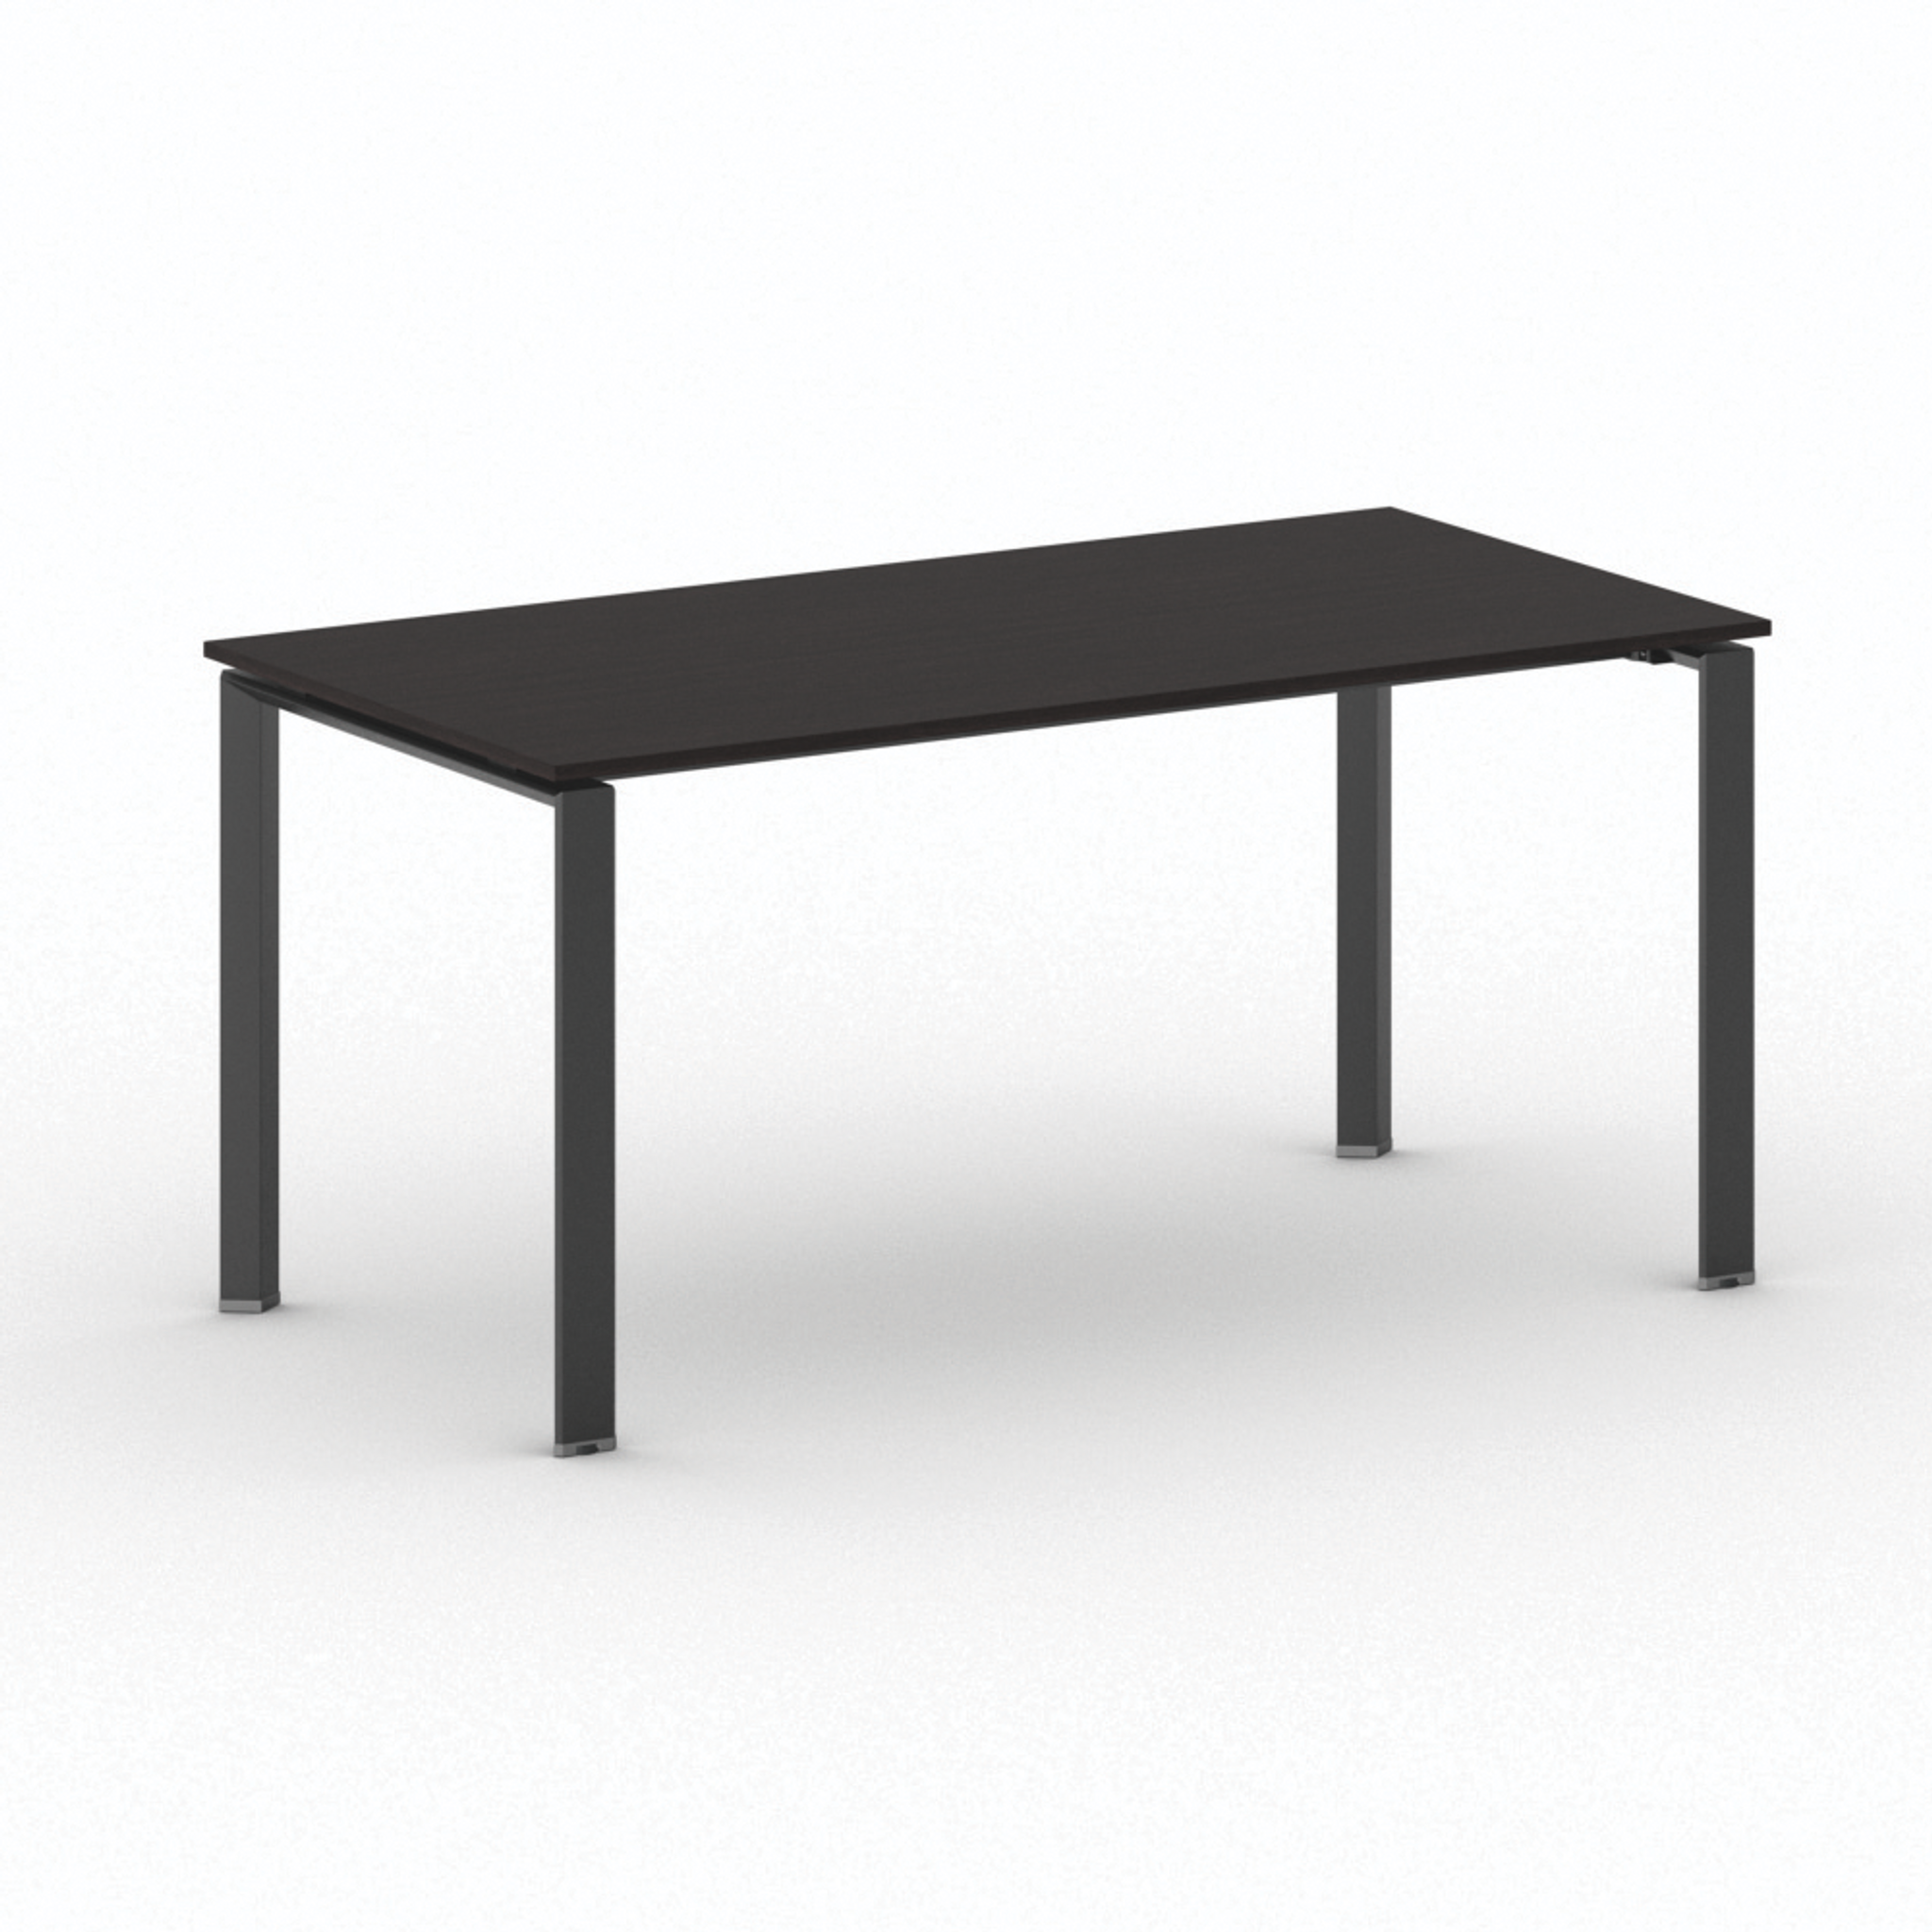 Konferenztisch, Besprechungstisch INFINITY 160x80 cm, Wenge, schwarzes Fußgestell